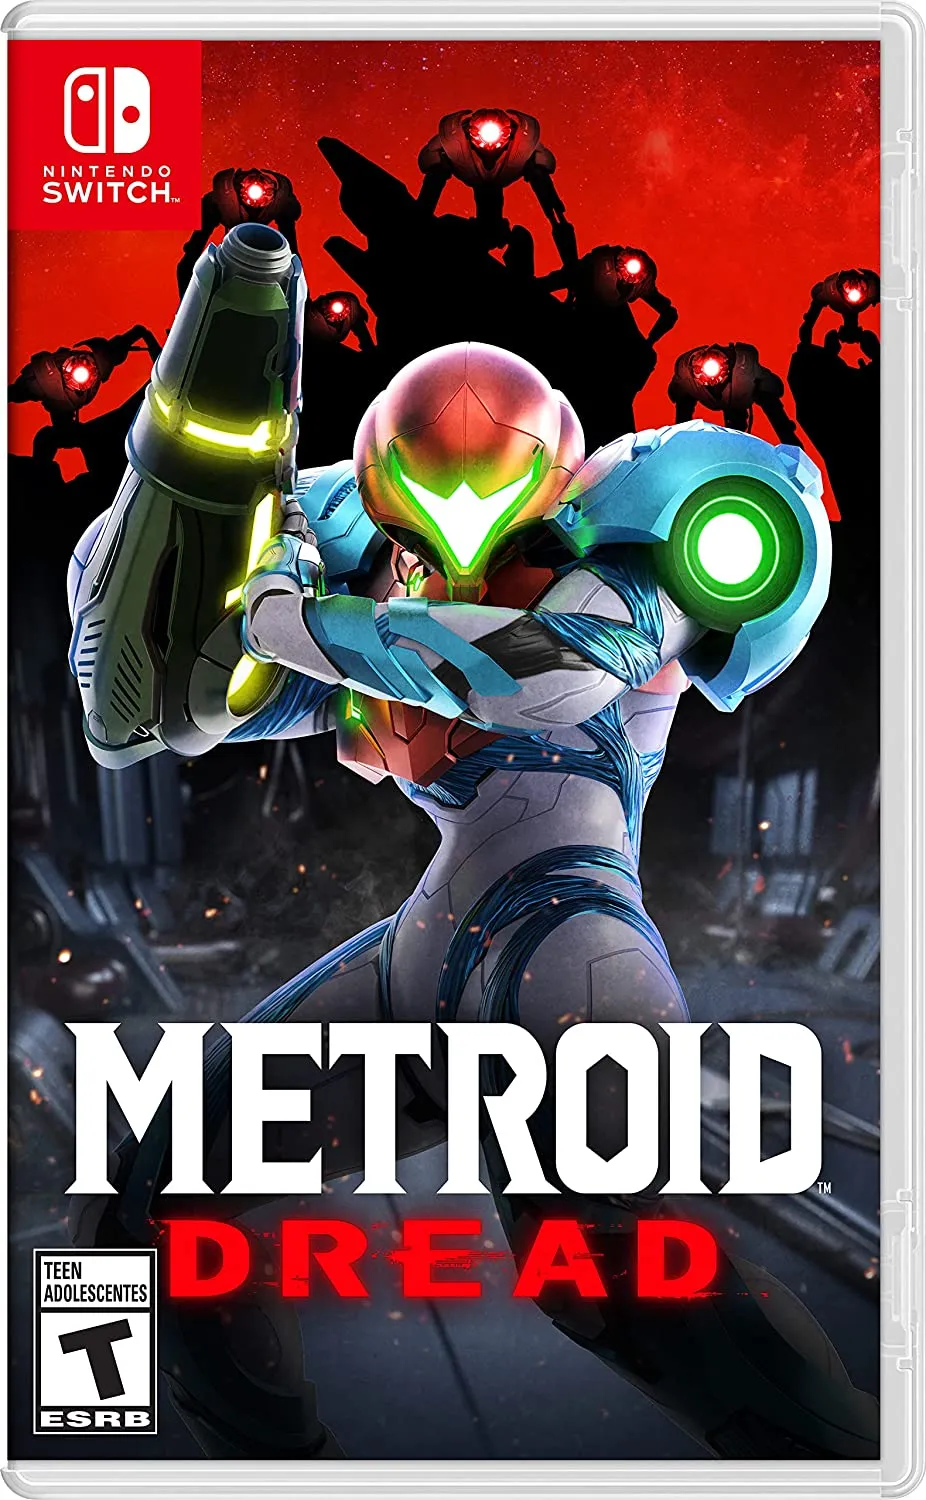 Illustration de couverture de Metroid Dread pour Nintendo Switch.